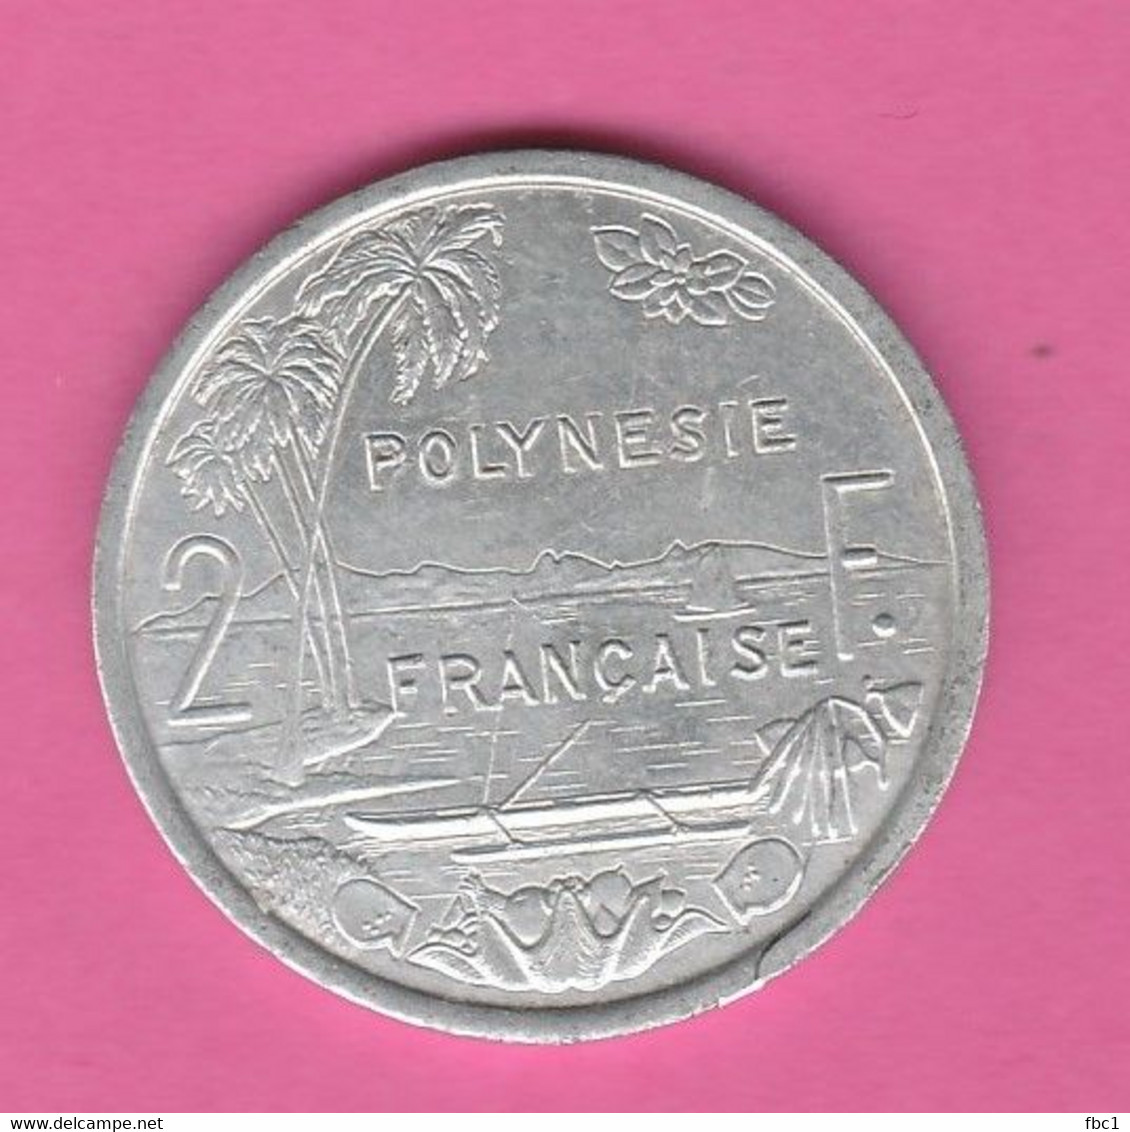 Polynésie Française - 2 Francs 1993 I.E.O.M. - French Polynesia